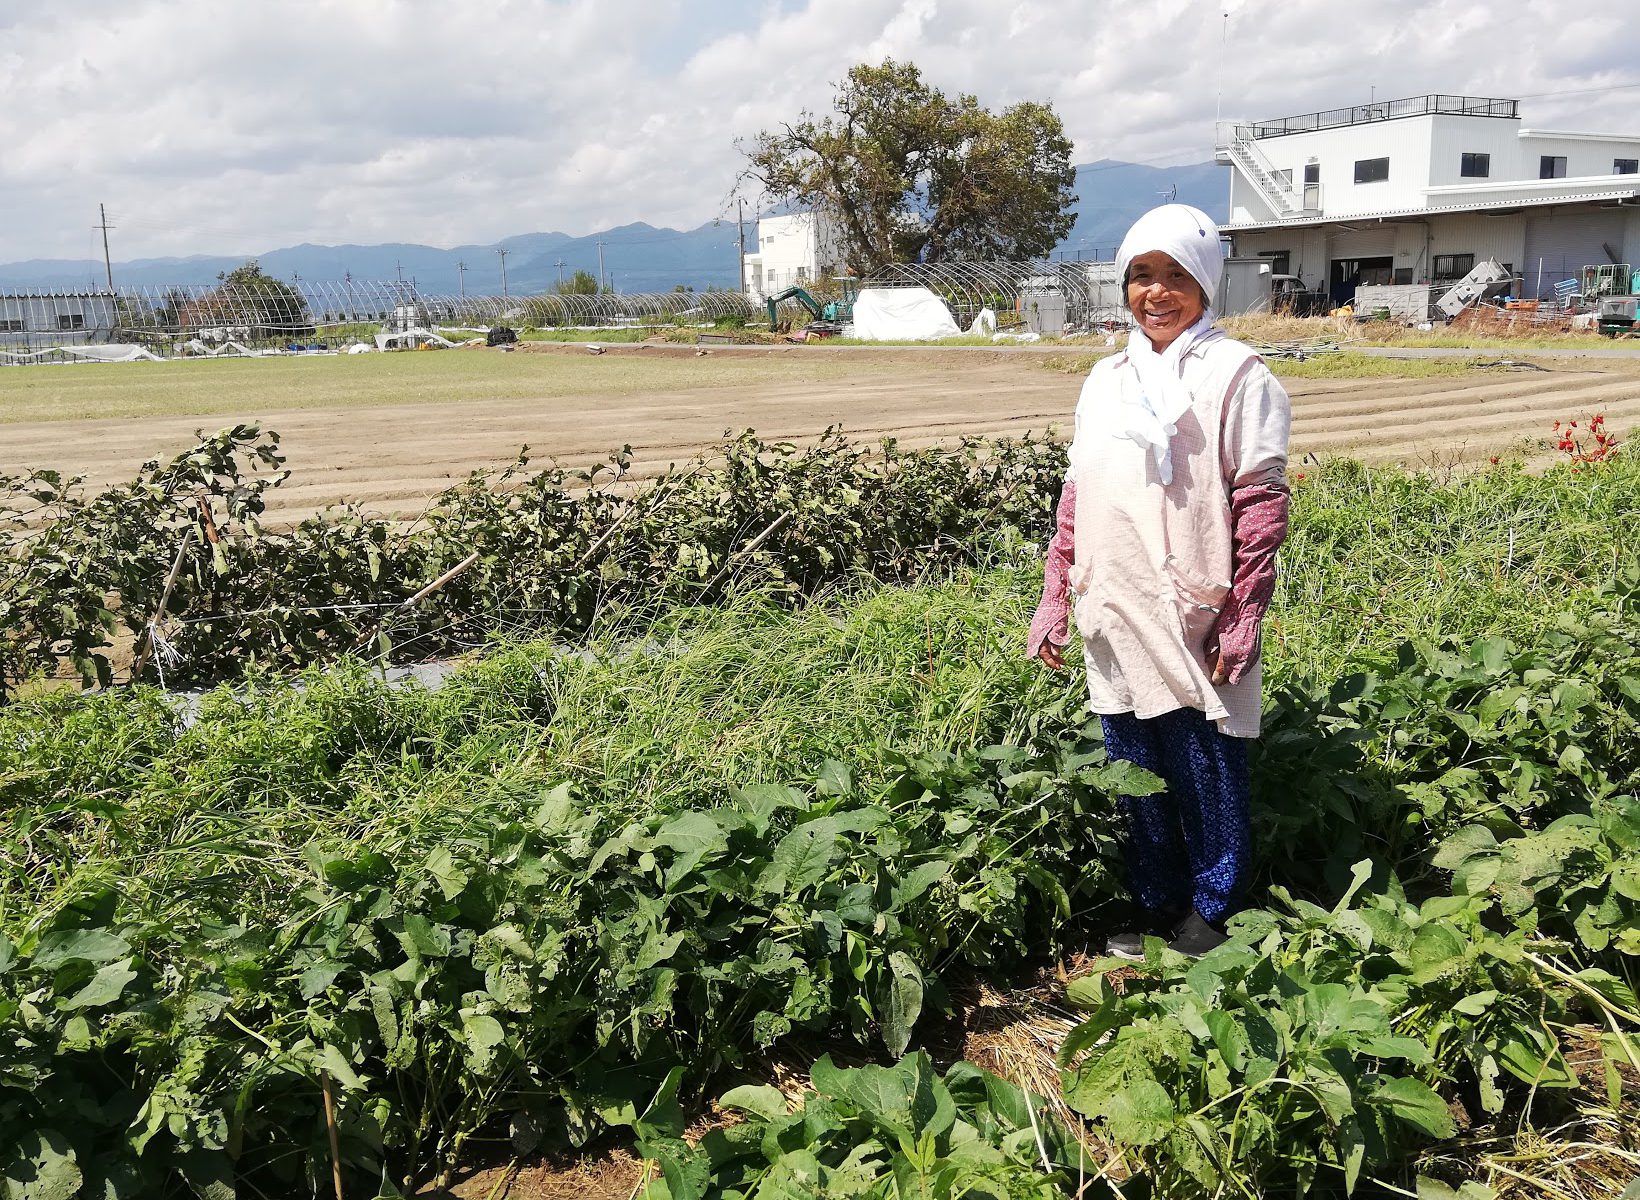 様々な野菜とお漬物加工等をされているベテラン女性農業者、「レイクスファーム」の辻清子さん。